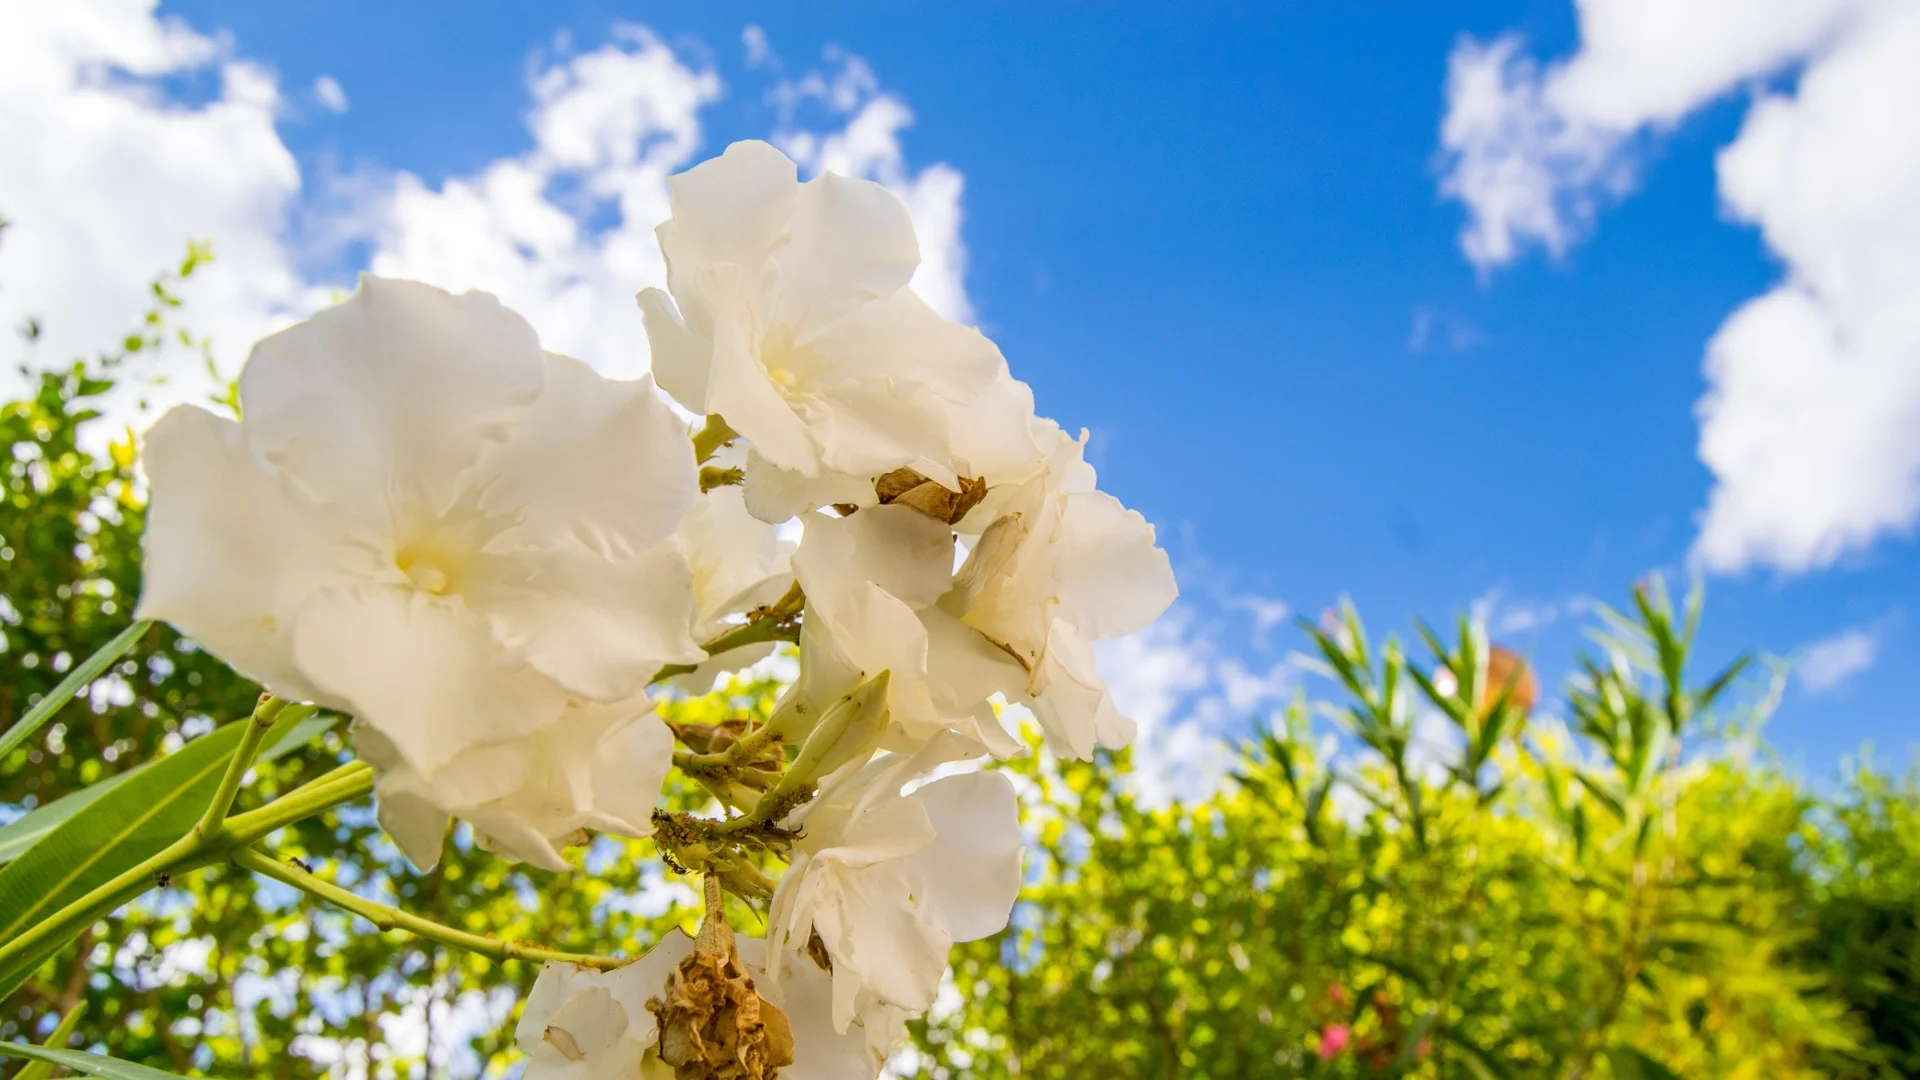 8 бели цветя, които трябва да имате в градината си